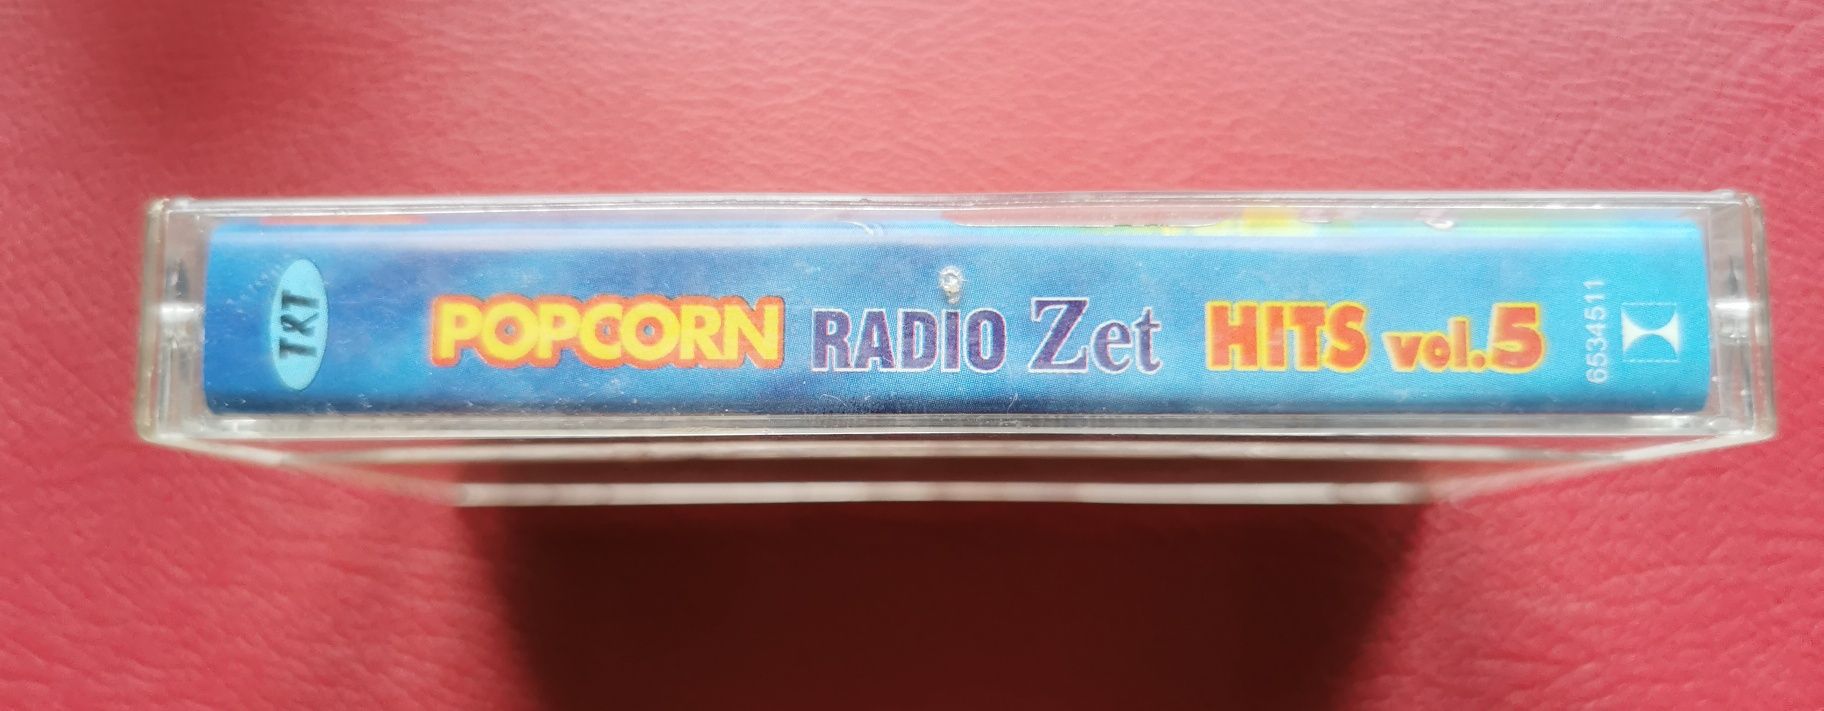 Kaseta Popcorn Radio ZET Hits vol. 5